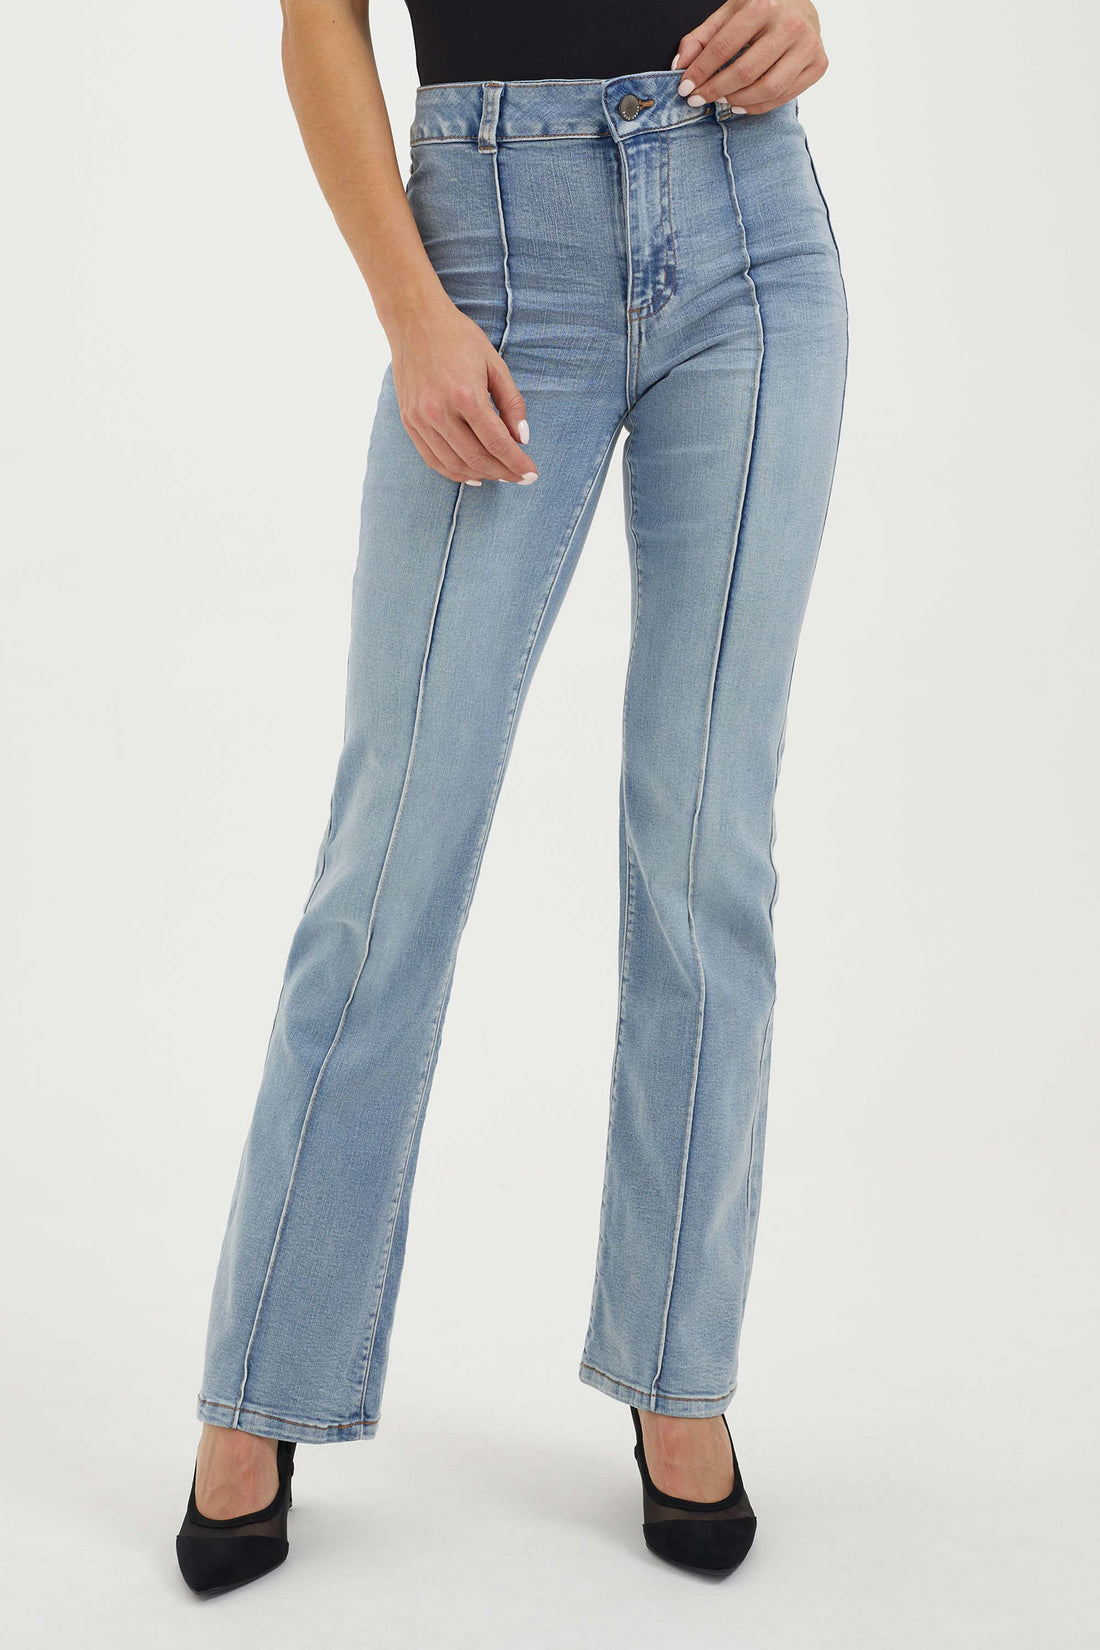 Ensemble de jeans skinny une pièce pour femme - Taille haute - Extensible -  Pantalon en jean slim - Manches longues, bleu ciel, Taille XL : :  Mode